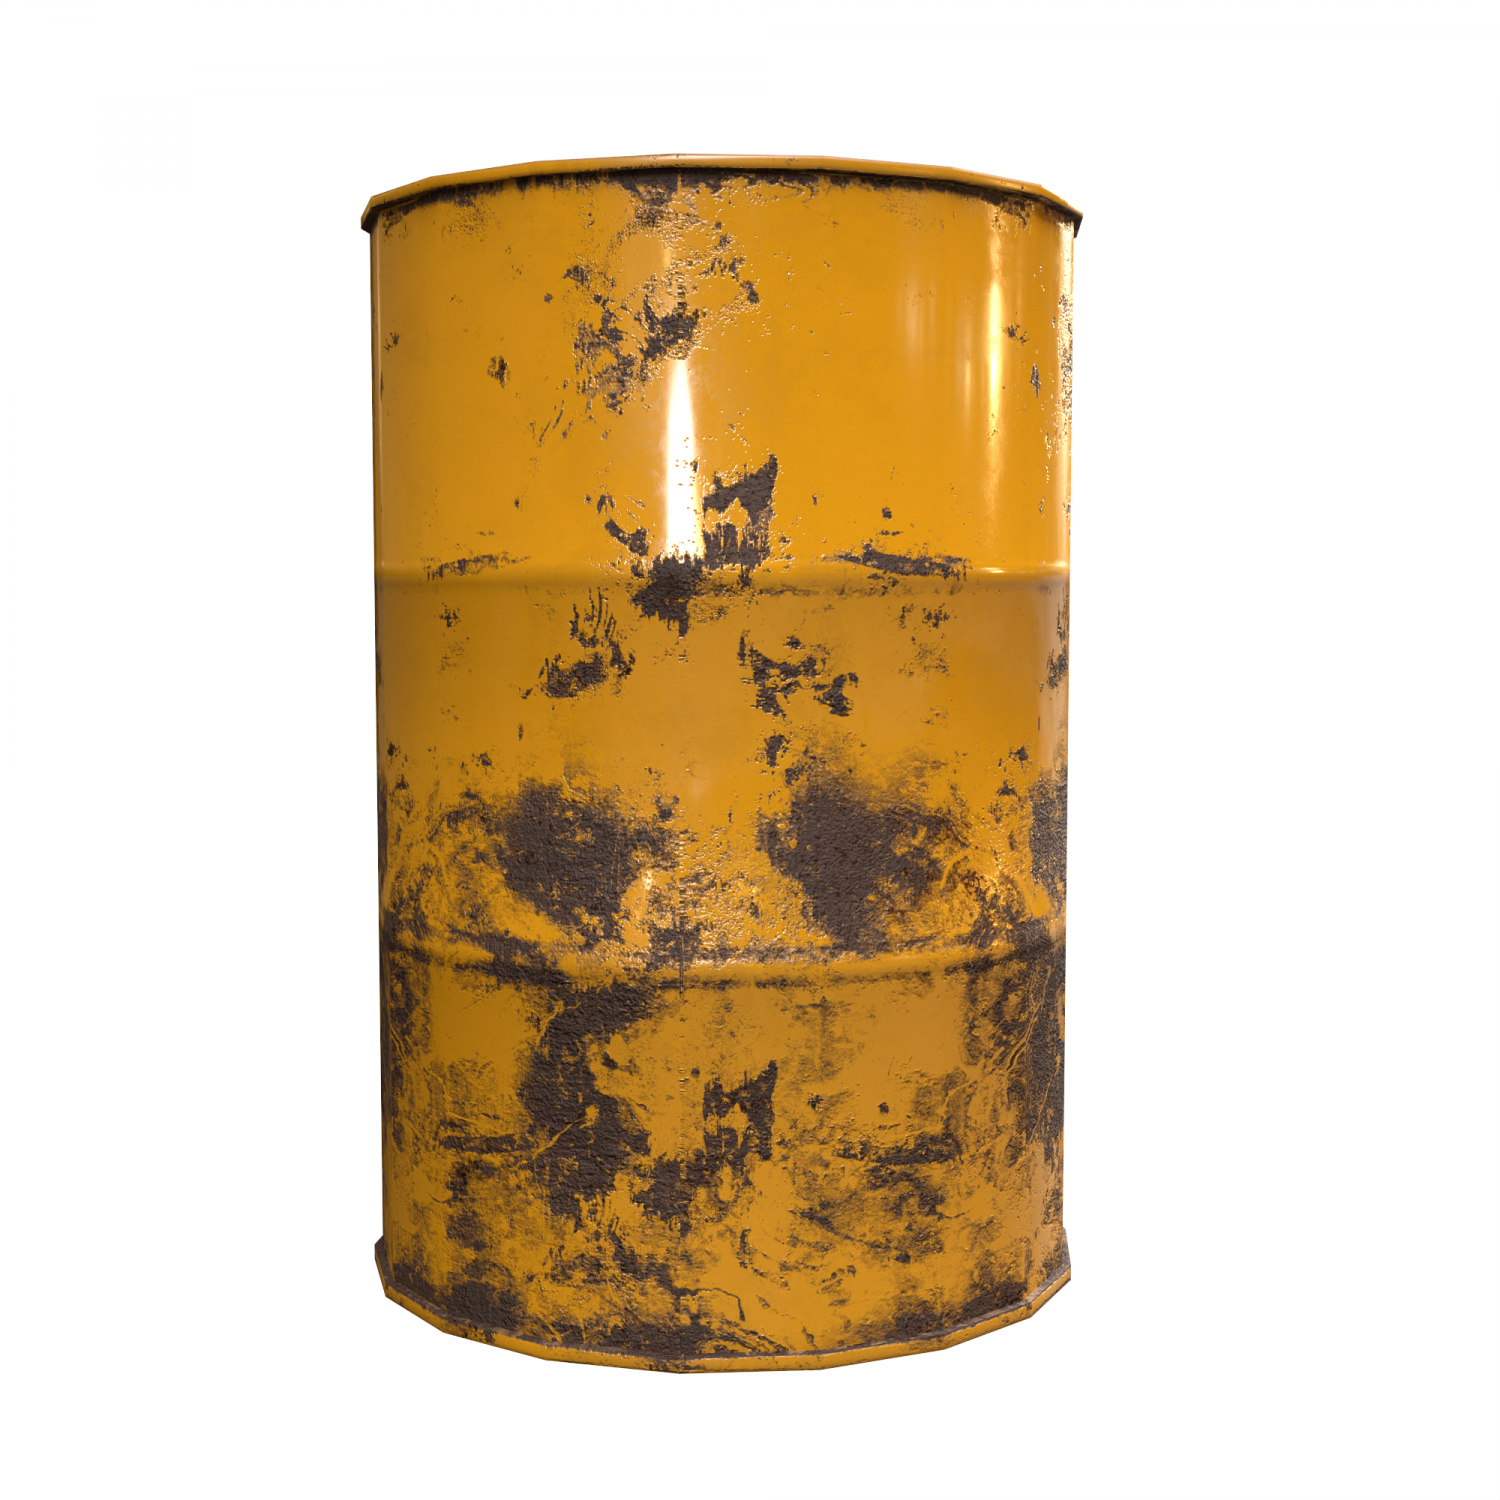 Gold barrel rust фото 25